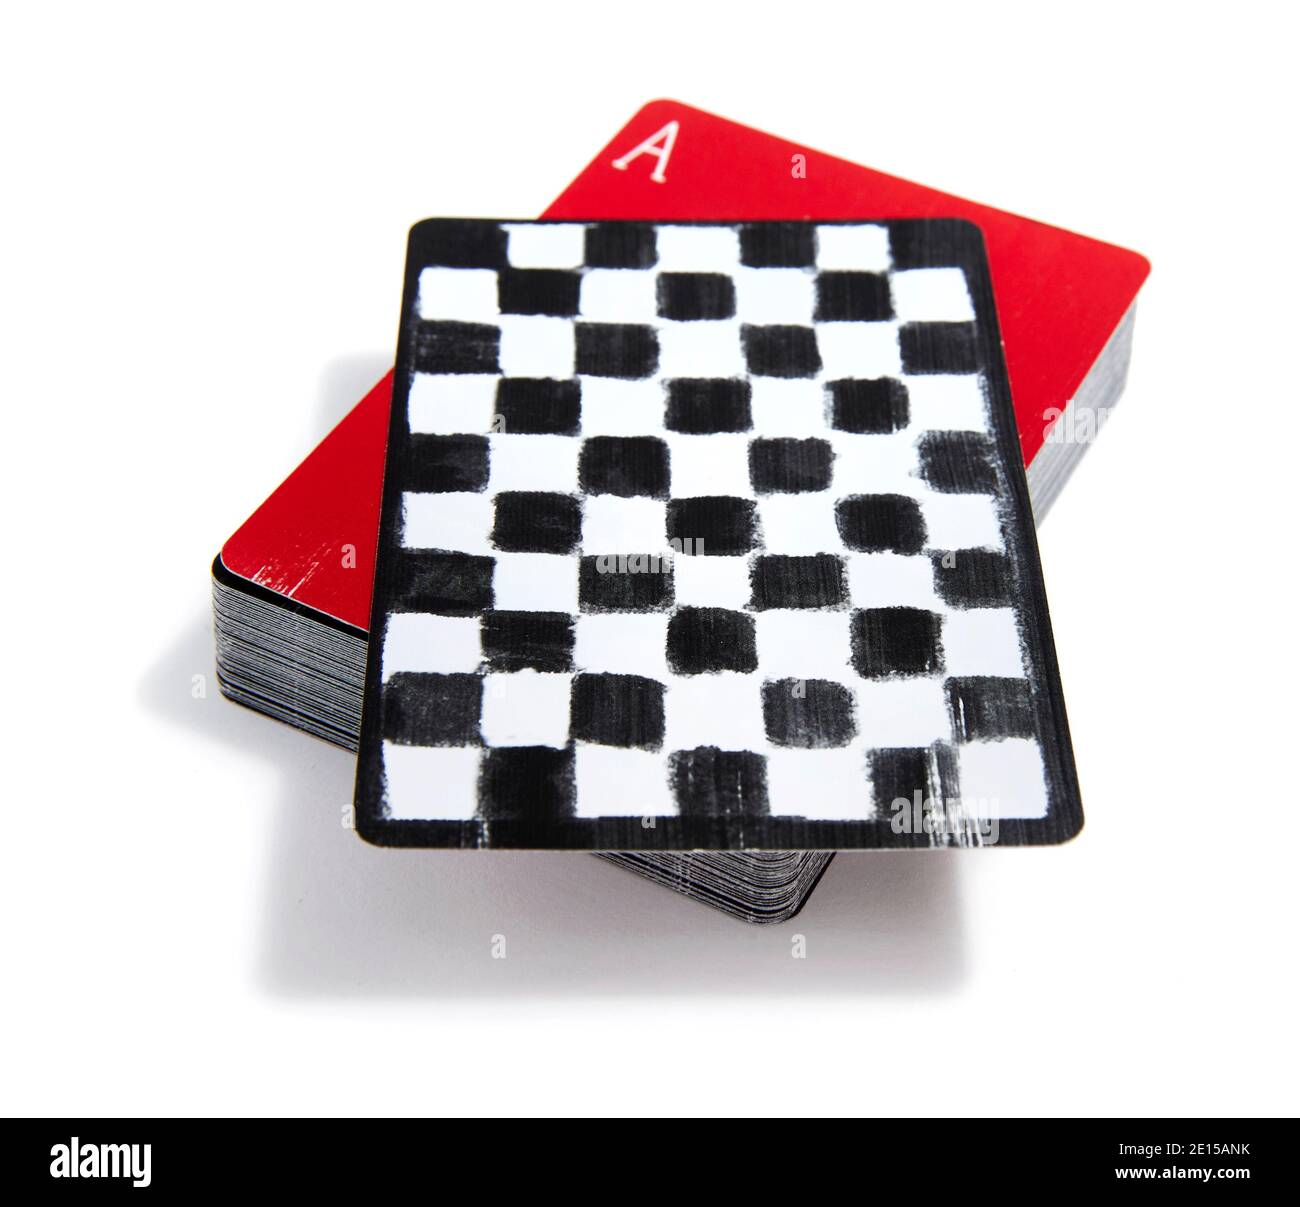 Rote und schwarze Schachmuster Spielkarten von Ellen Degeneres Fotografiert auf weißem Hintergrund Stockfoto